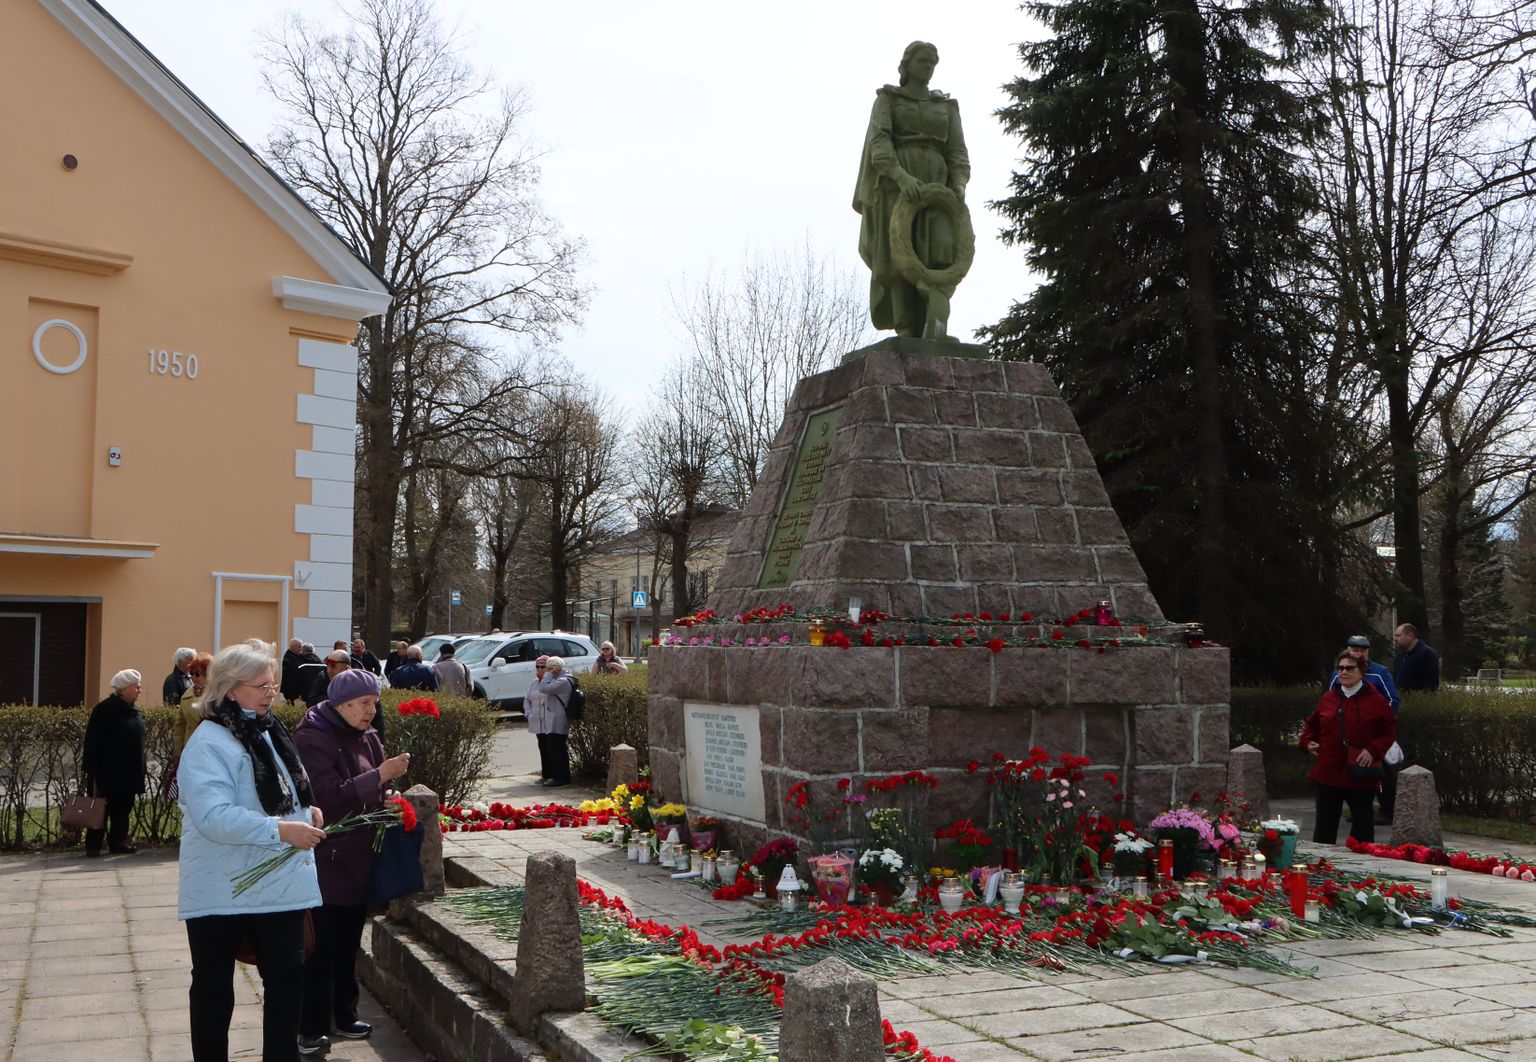 К памятнику в старом городе Кохтла-Ярве 9 мая люди годами приходили и приносили цветы. Нынче из-за ограничений, введенных правительством в связи с войной в Украине, обошлось без привычной советской и российской символики, и людей было меньше, чем обычно.